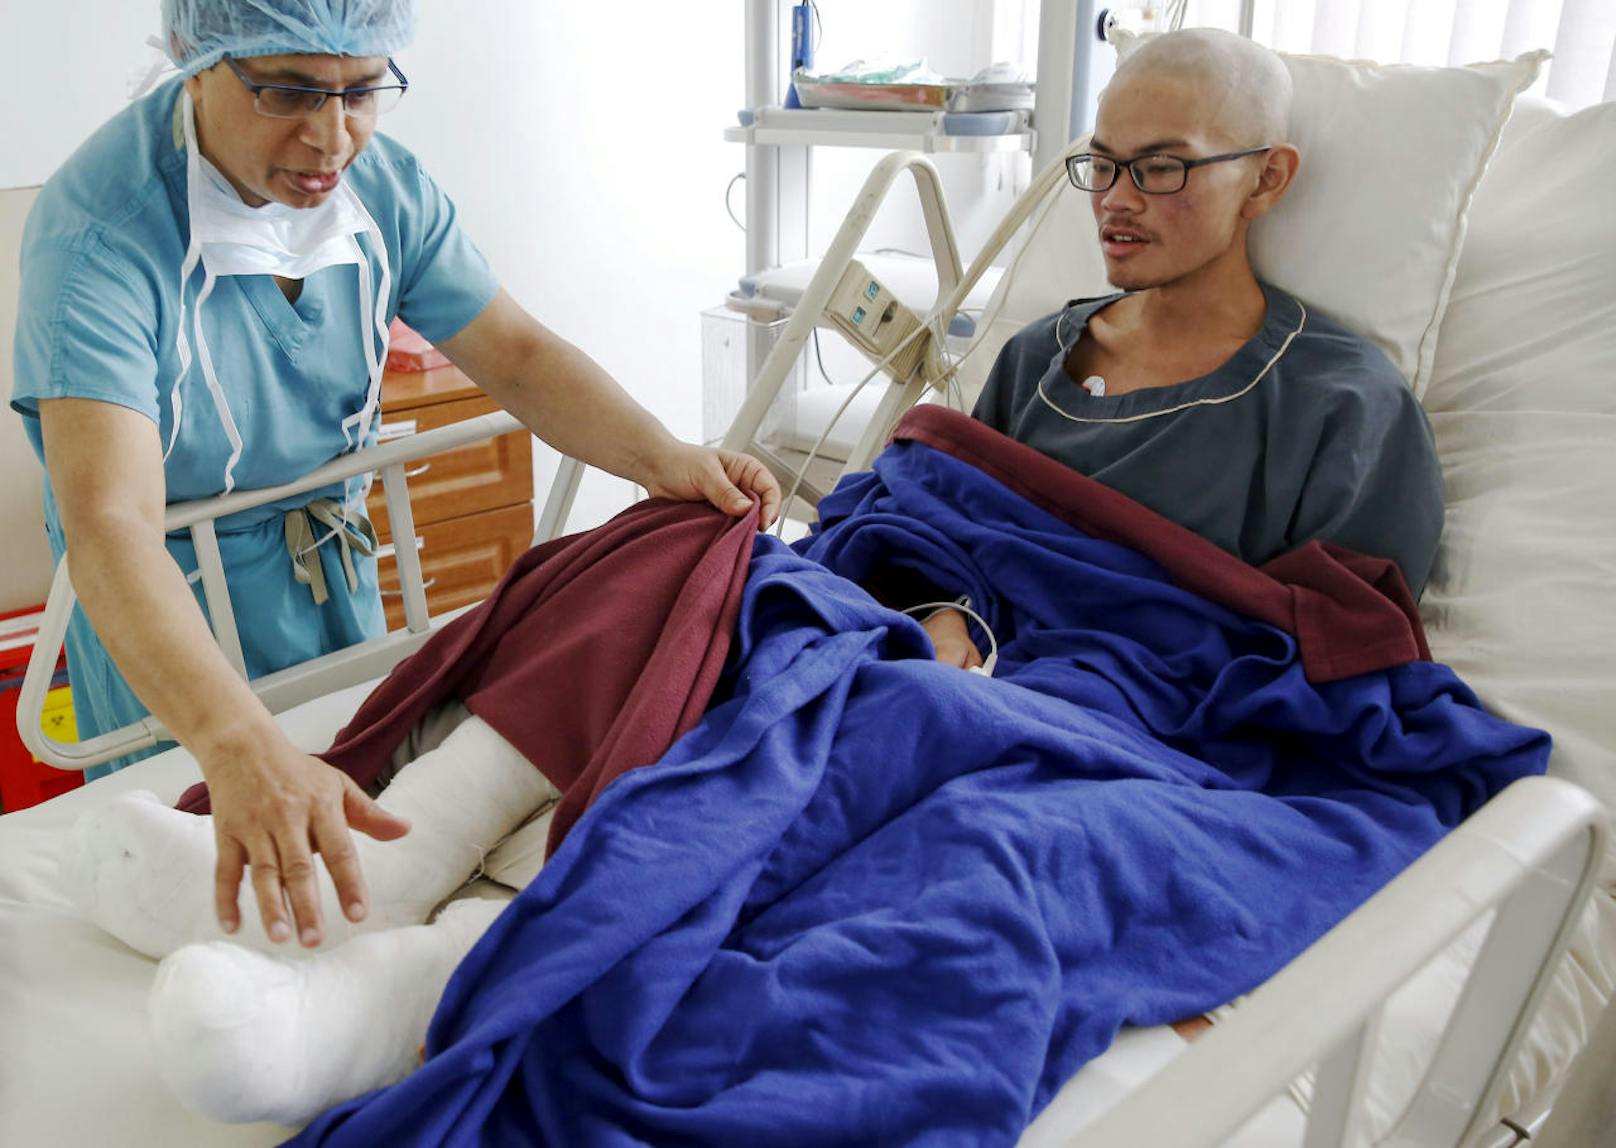 Liang Sheng Yueh überlebte den Horrortrip in den Bergen von Nepal